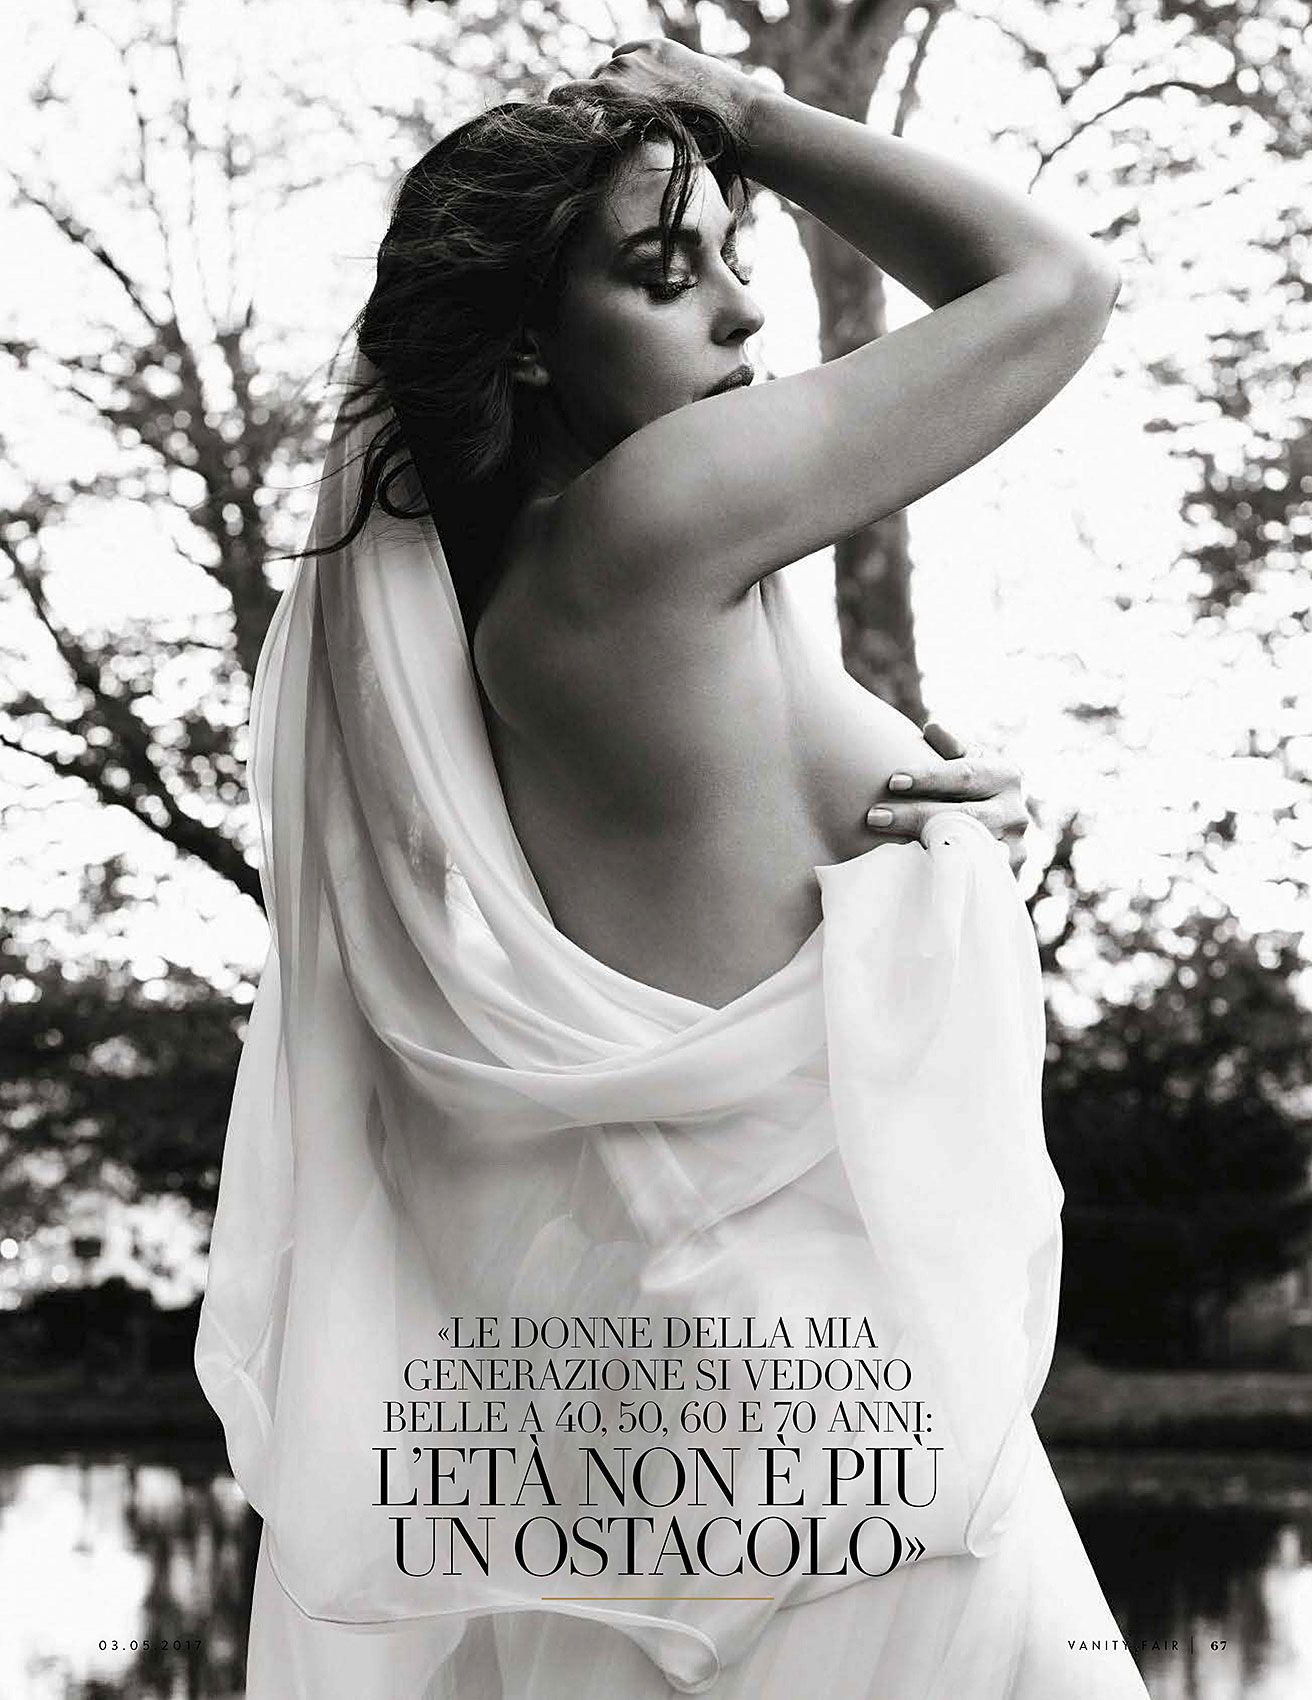 Monica Bellucci Nude & Sexy Collection - Part 1 (150 Photos + Videos)